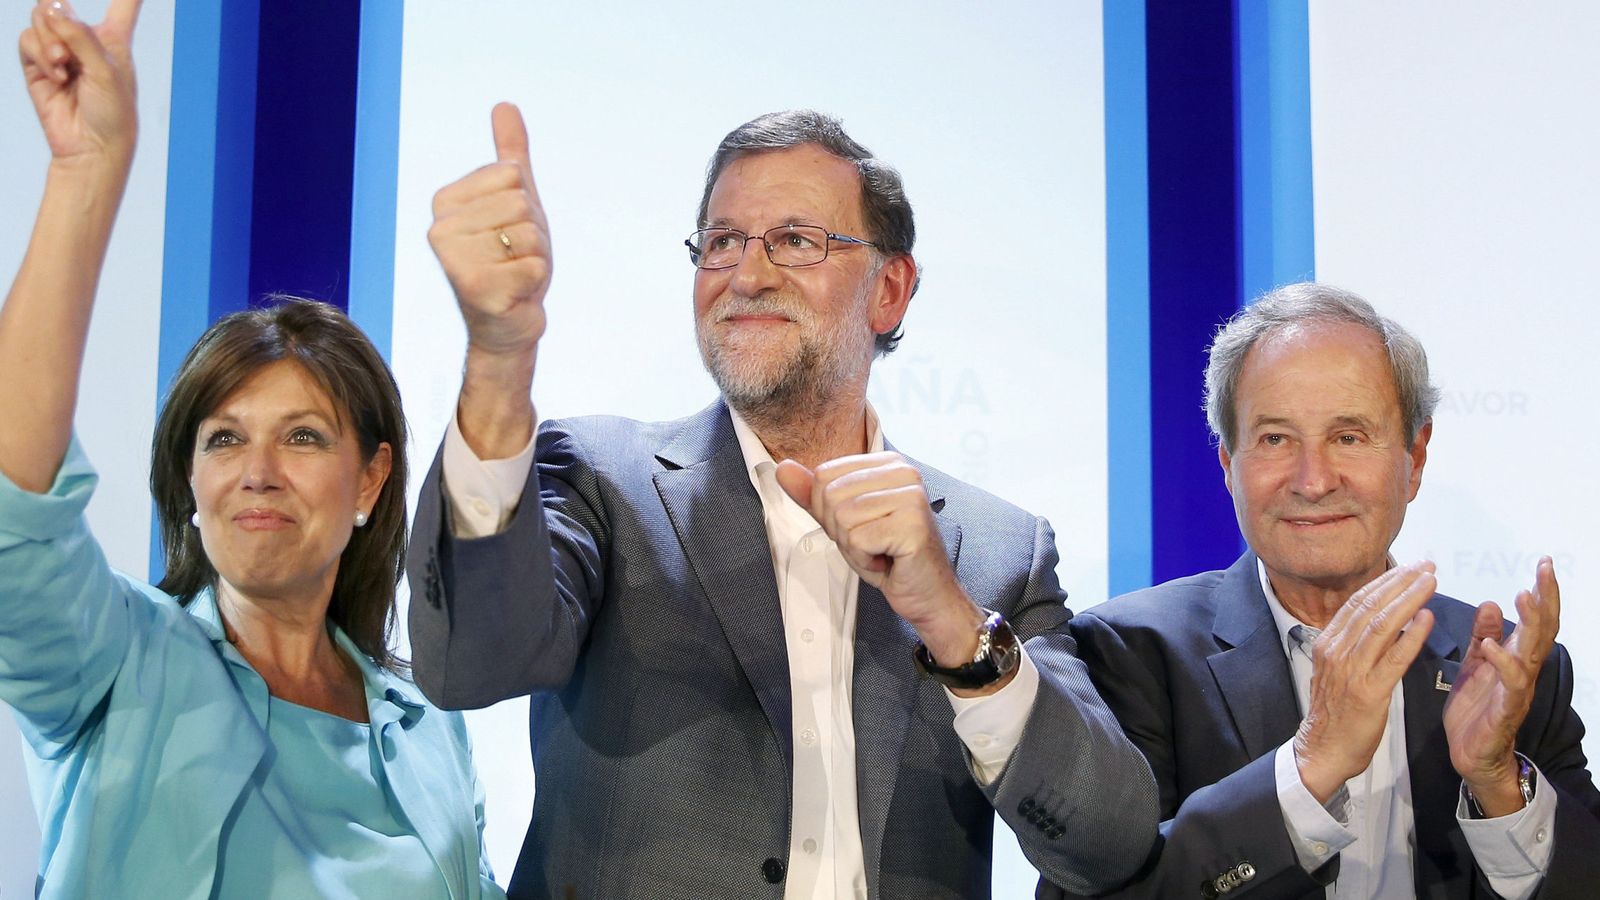 Foto: Mariano Rajoy: "Algo tendrán que hacer, no querrán llevarnos a nuevas elecciones"